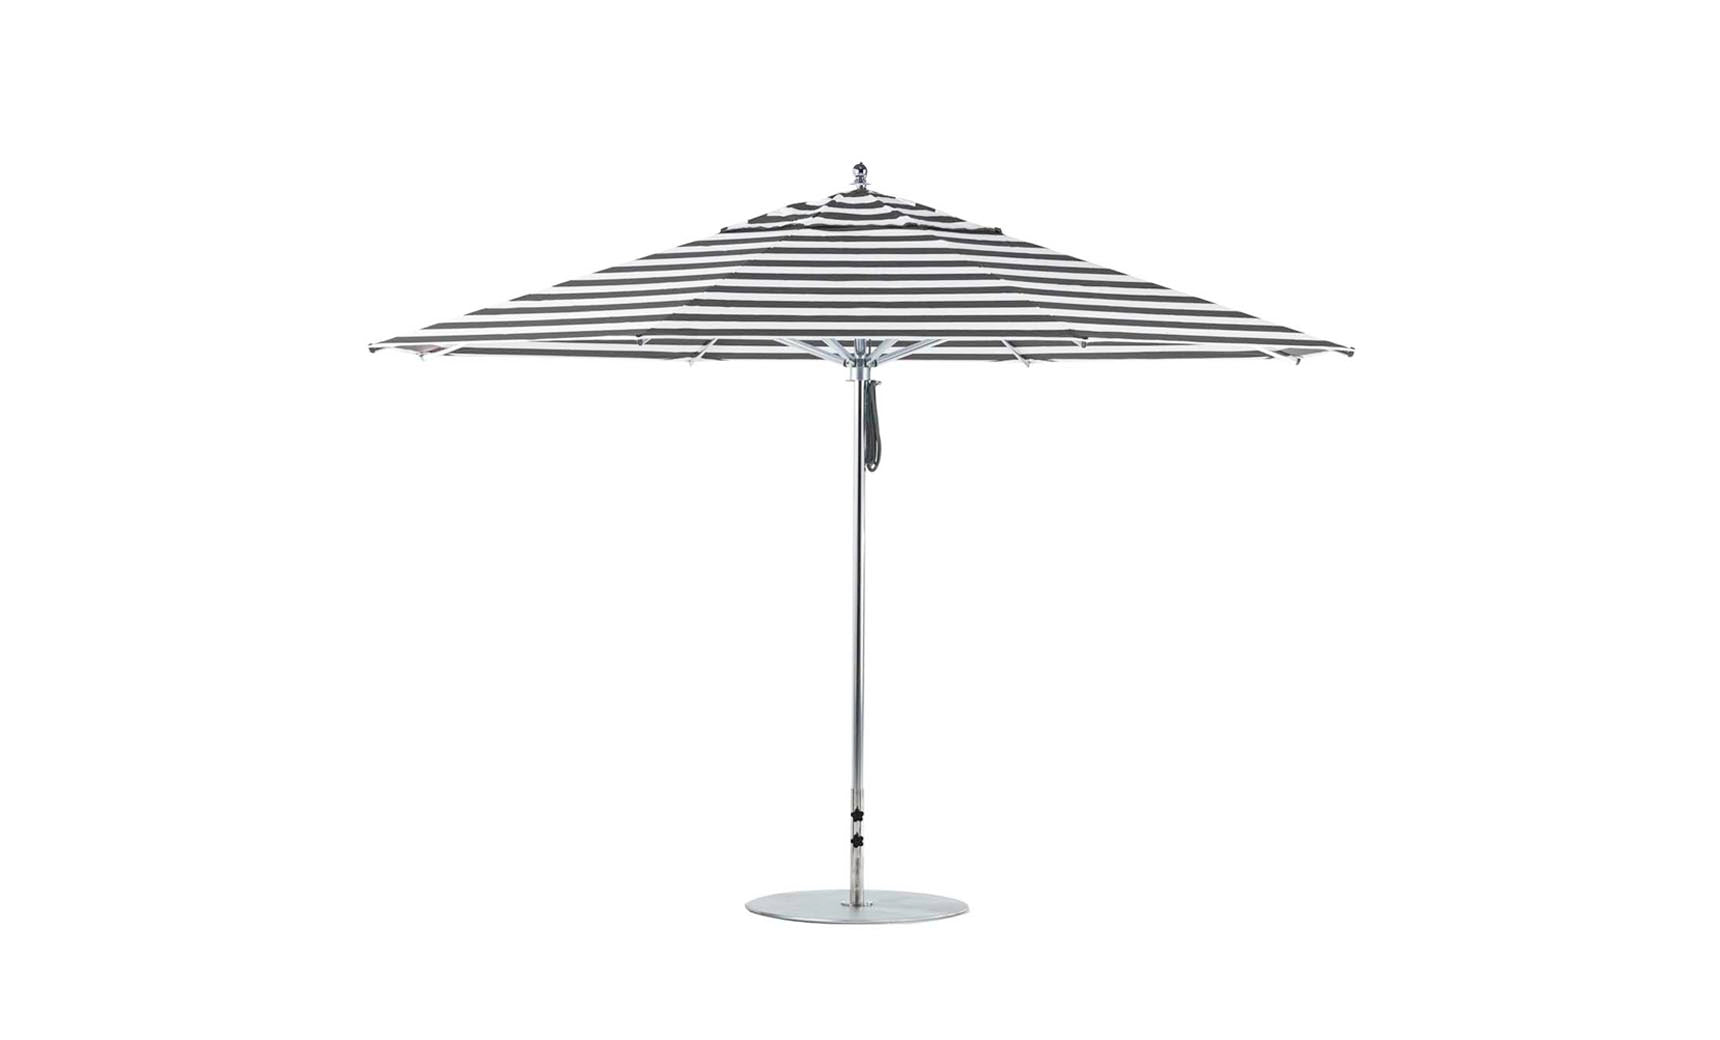 Premier Aluminum Umbrella - 13' Octagon Pulley